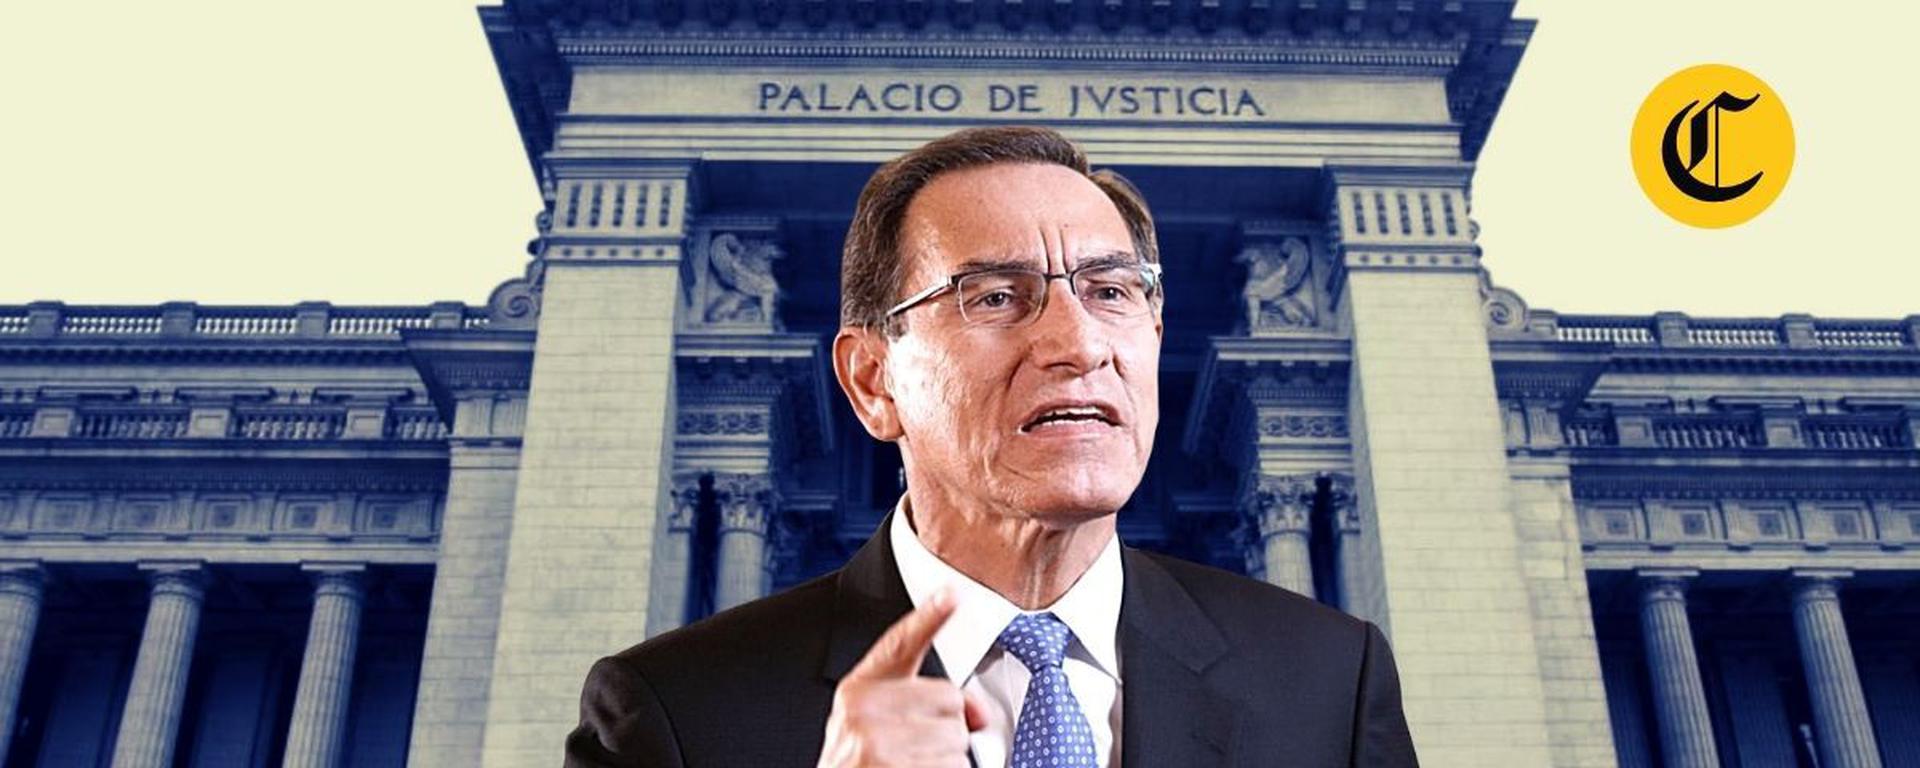 Martín Vizcarra irá a juicio por presuntas coimas cuando era gobernador: los detalles del nuevo revés